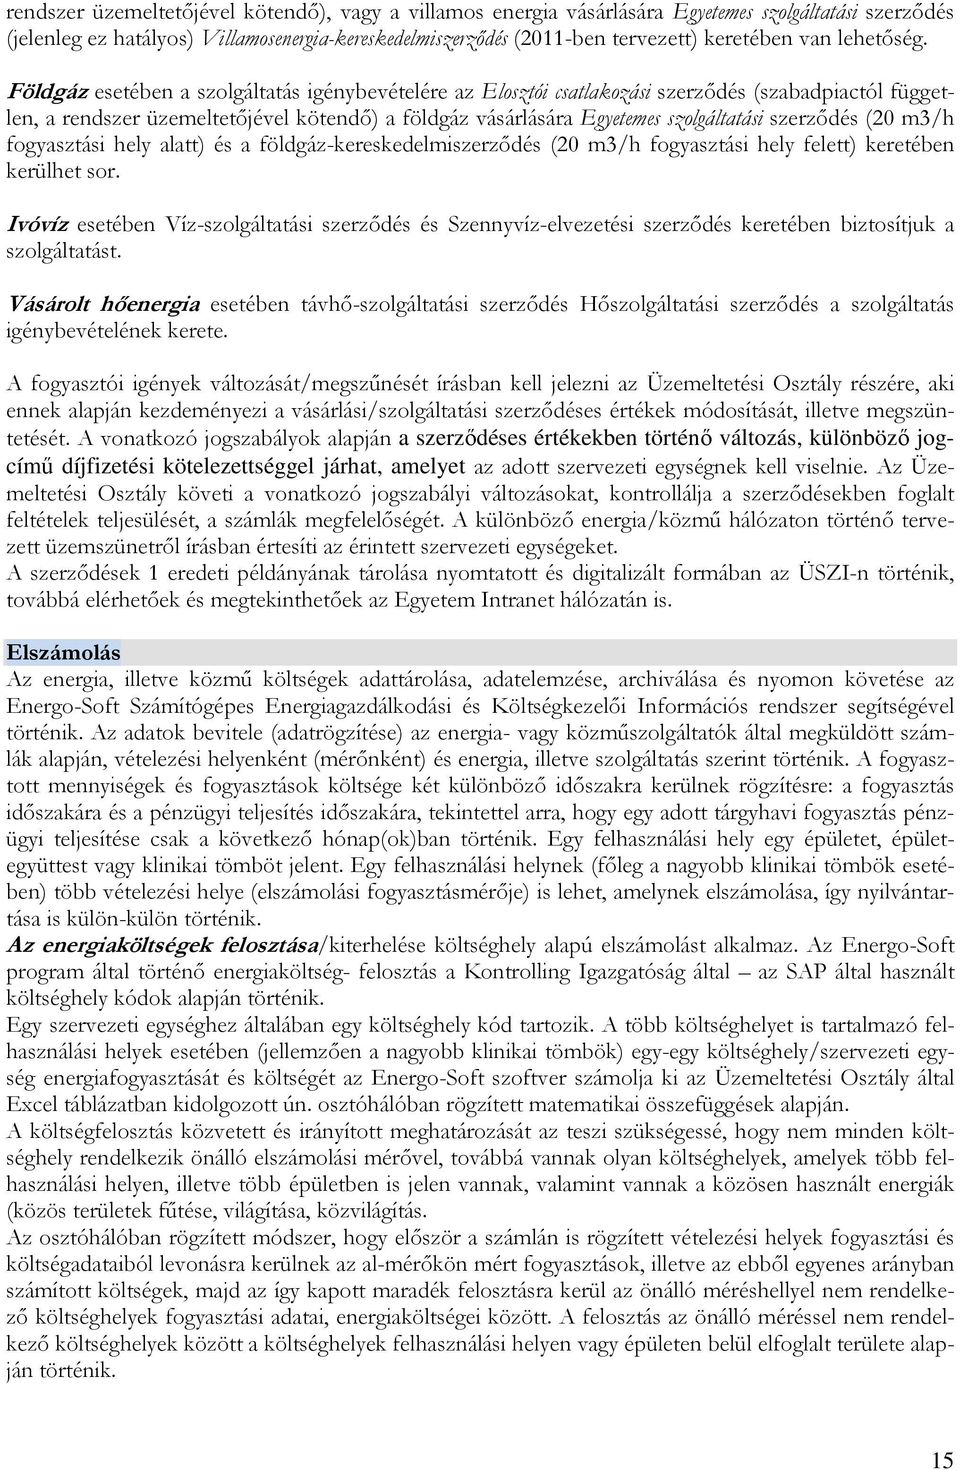 Földgáz esetében a szolgáltatás igénybevételére az Elosztói csatlakozási szerzıdés (szabadpiactól független, a rendszer üzemeltetıjével kötendı) a földgáz vásárlására Egyetemes szolgáltatási